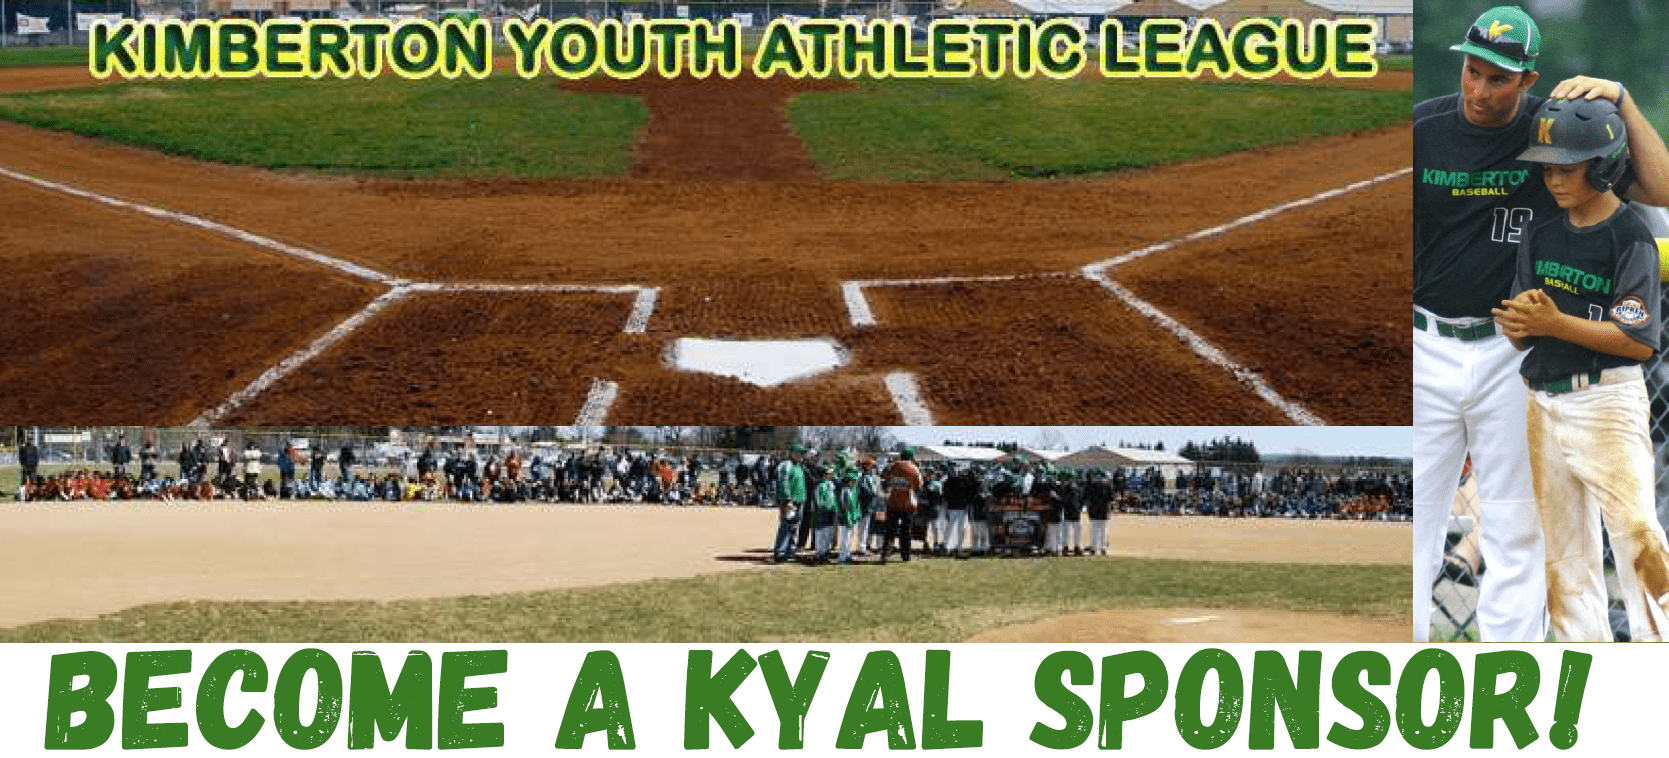 London Youth Baseball League